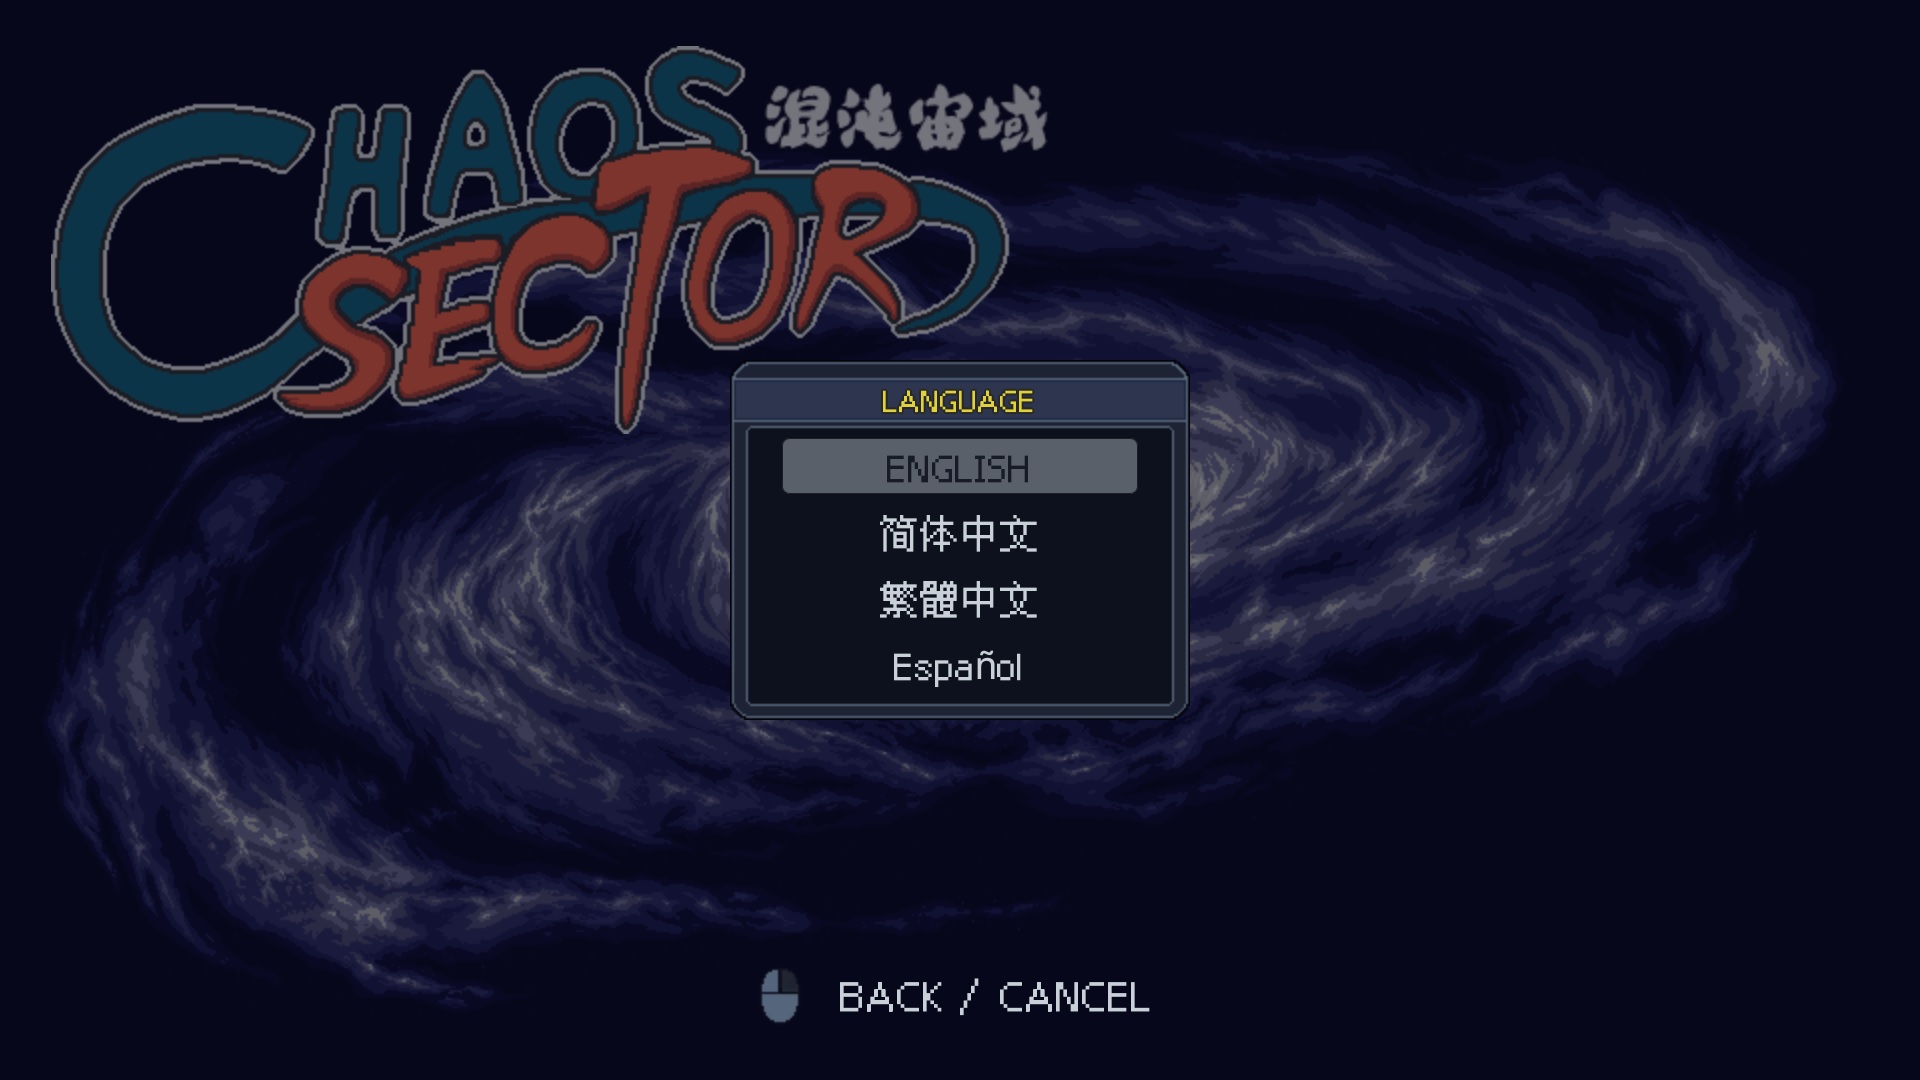 《混沌宙域(Chaos Sector)》|V3446628|中文|免安装硬盘版